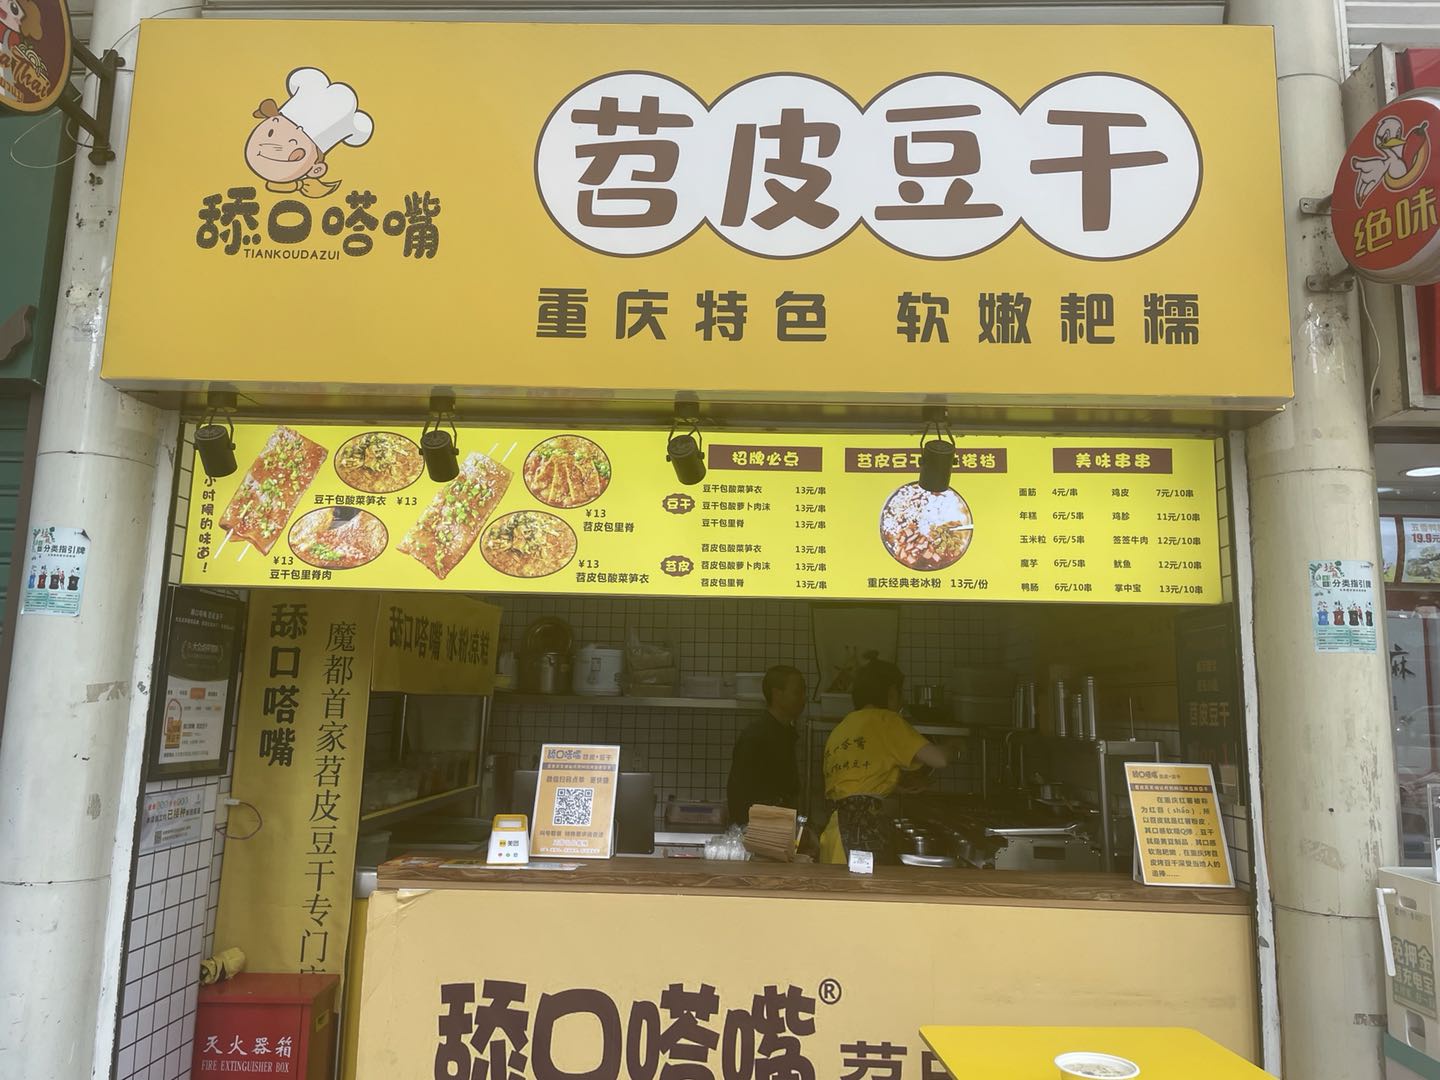 【寻味家乡】重庆的苕皮烧烤软糯香辣,冰粉透心凉,搭配着吃极度舒适